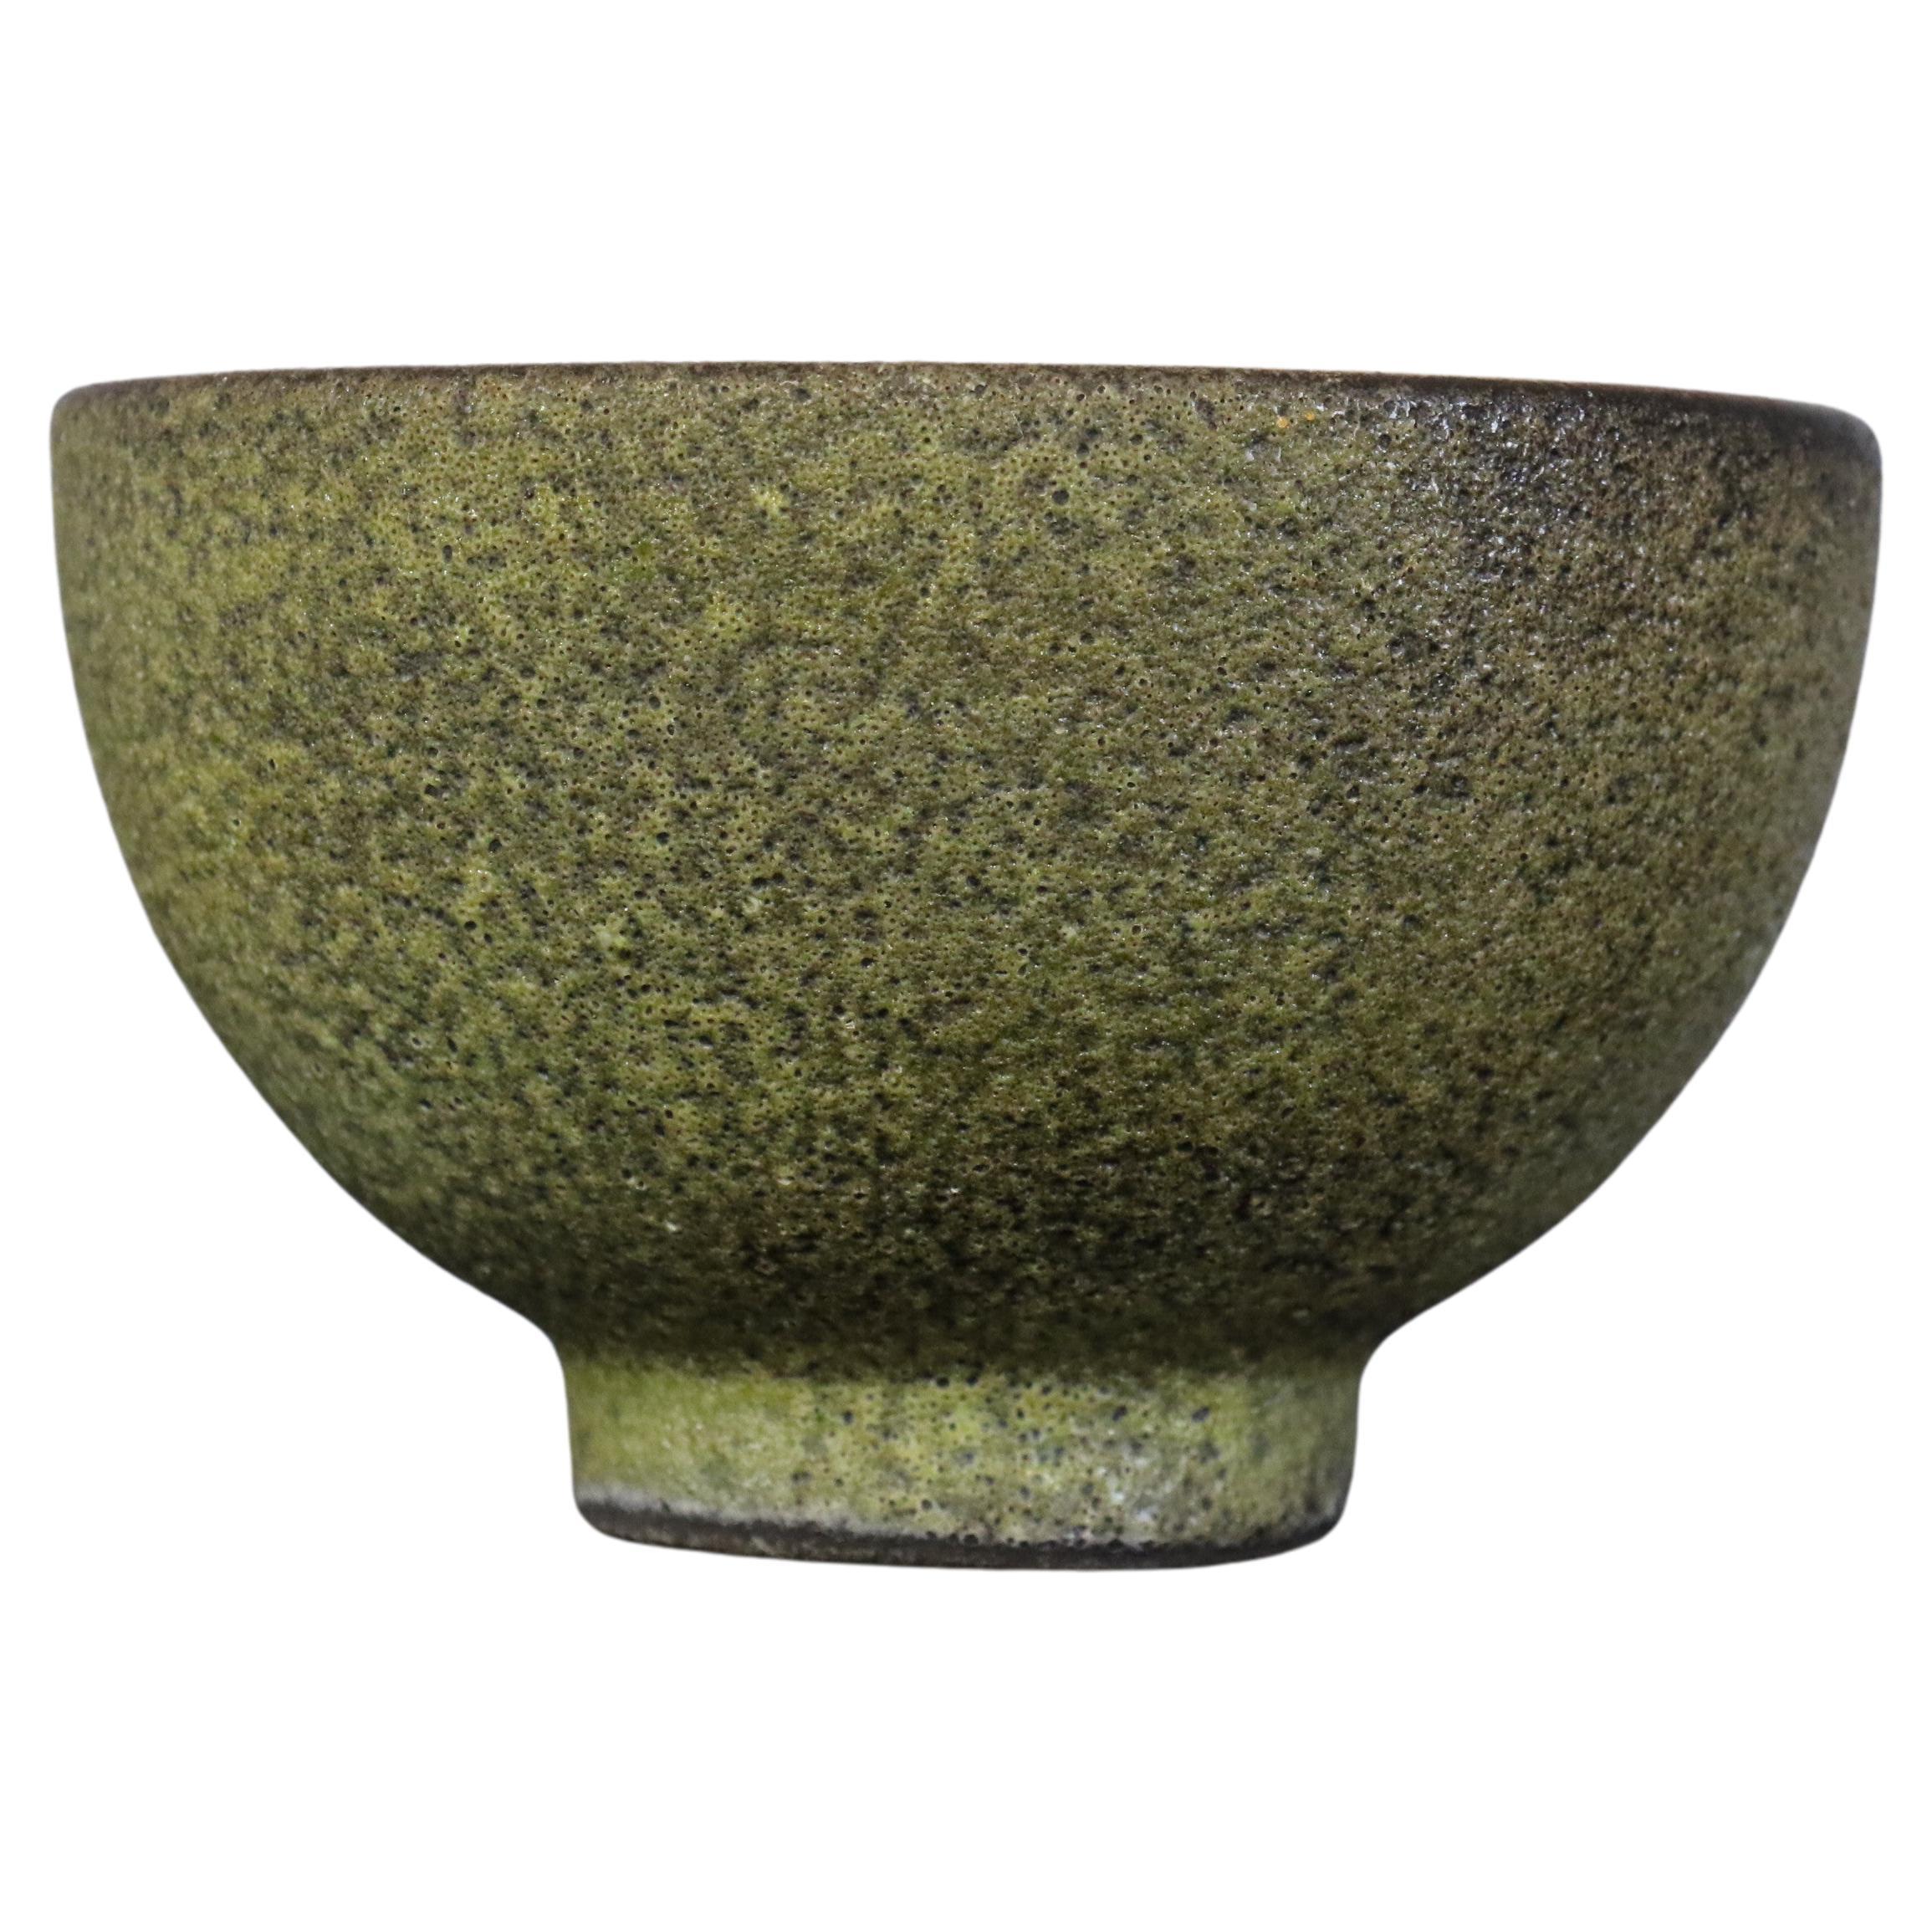 Bol à glaçure lave, attribué à James Lovera, 1970

Magnifique bol émaillé à la lave, caractéristique du travail de James Lovera. De couleur verte et brune, cette œuvre est particulièrement fine et délicate. 

Il est en très bon état. 